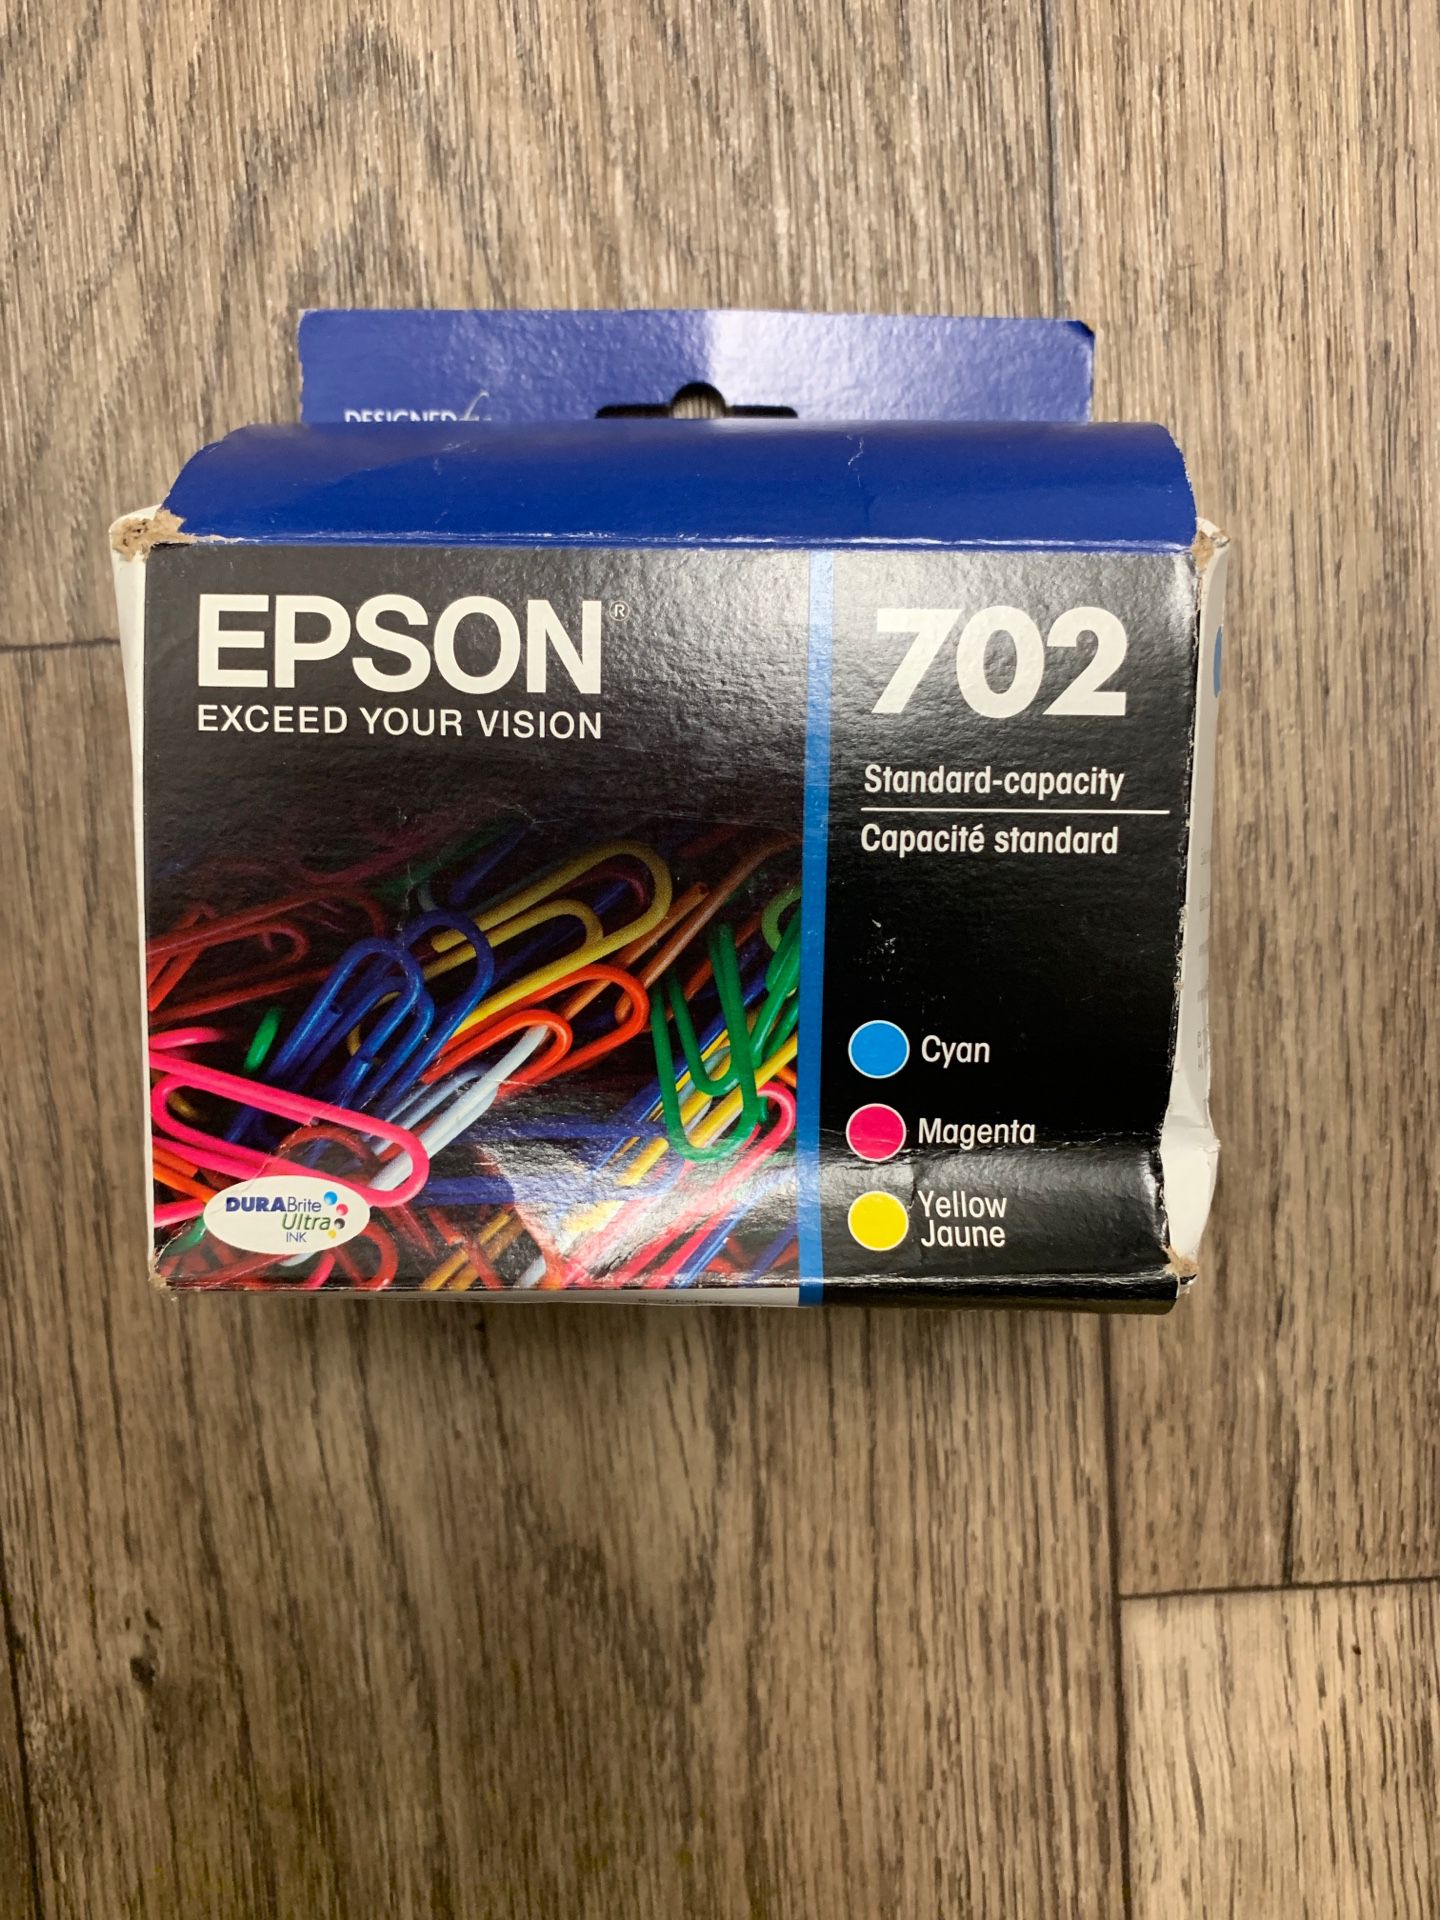 Epson T702520 Cyan, Magenta, Yellow cartridges kit.